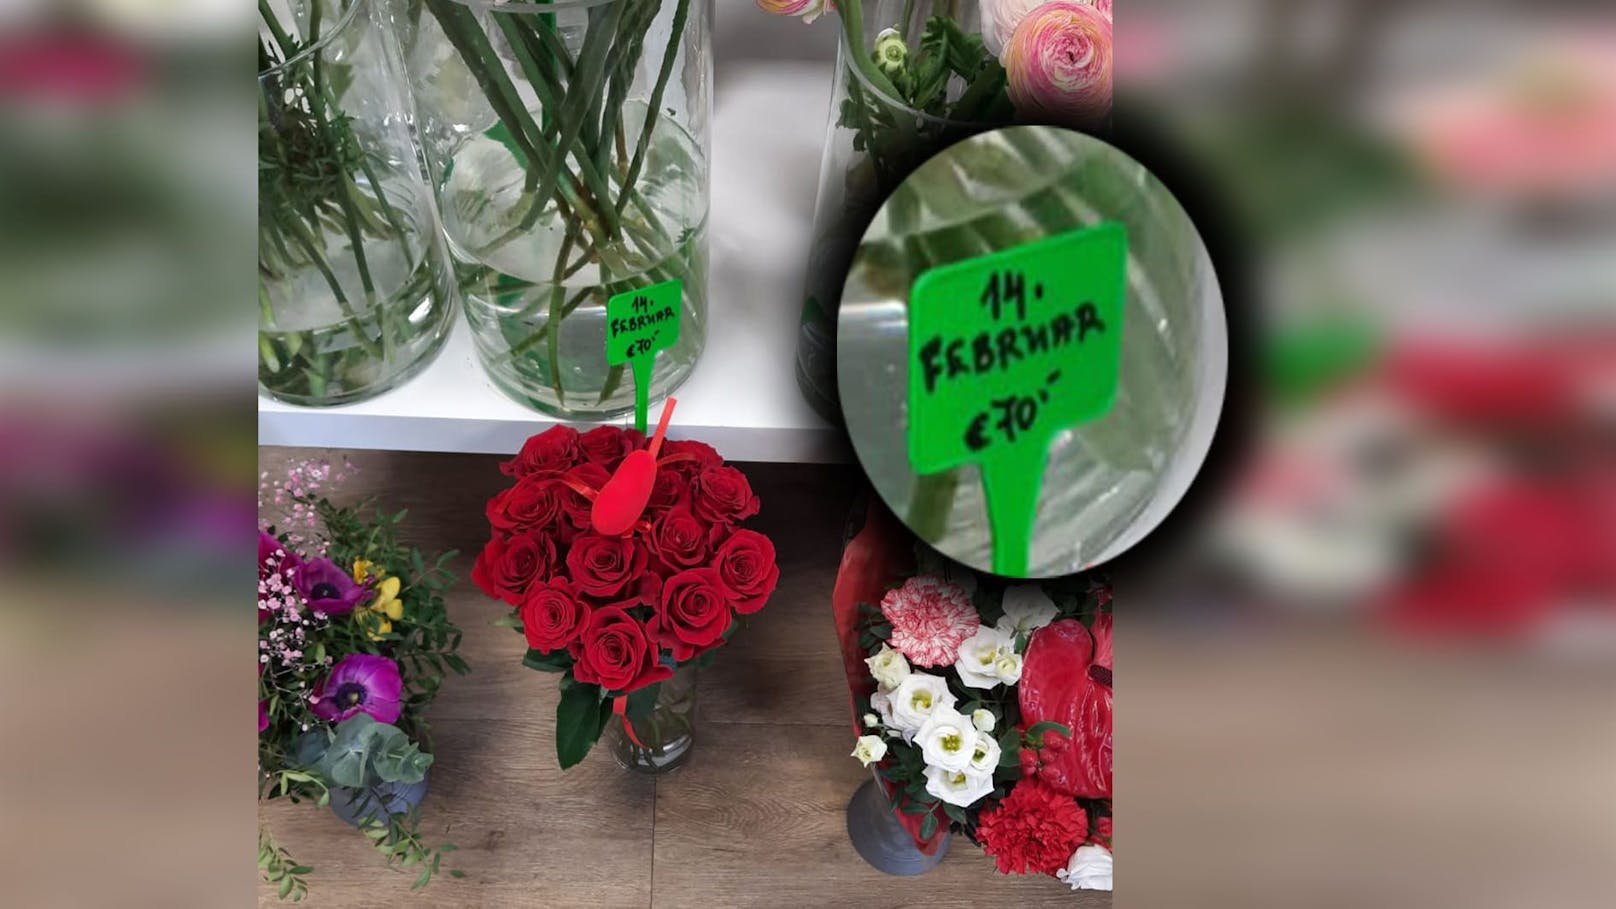 Valentins-Schock: 14 Rosen kosten in Wiener Shop 70 €